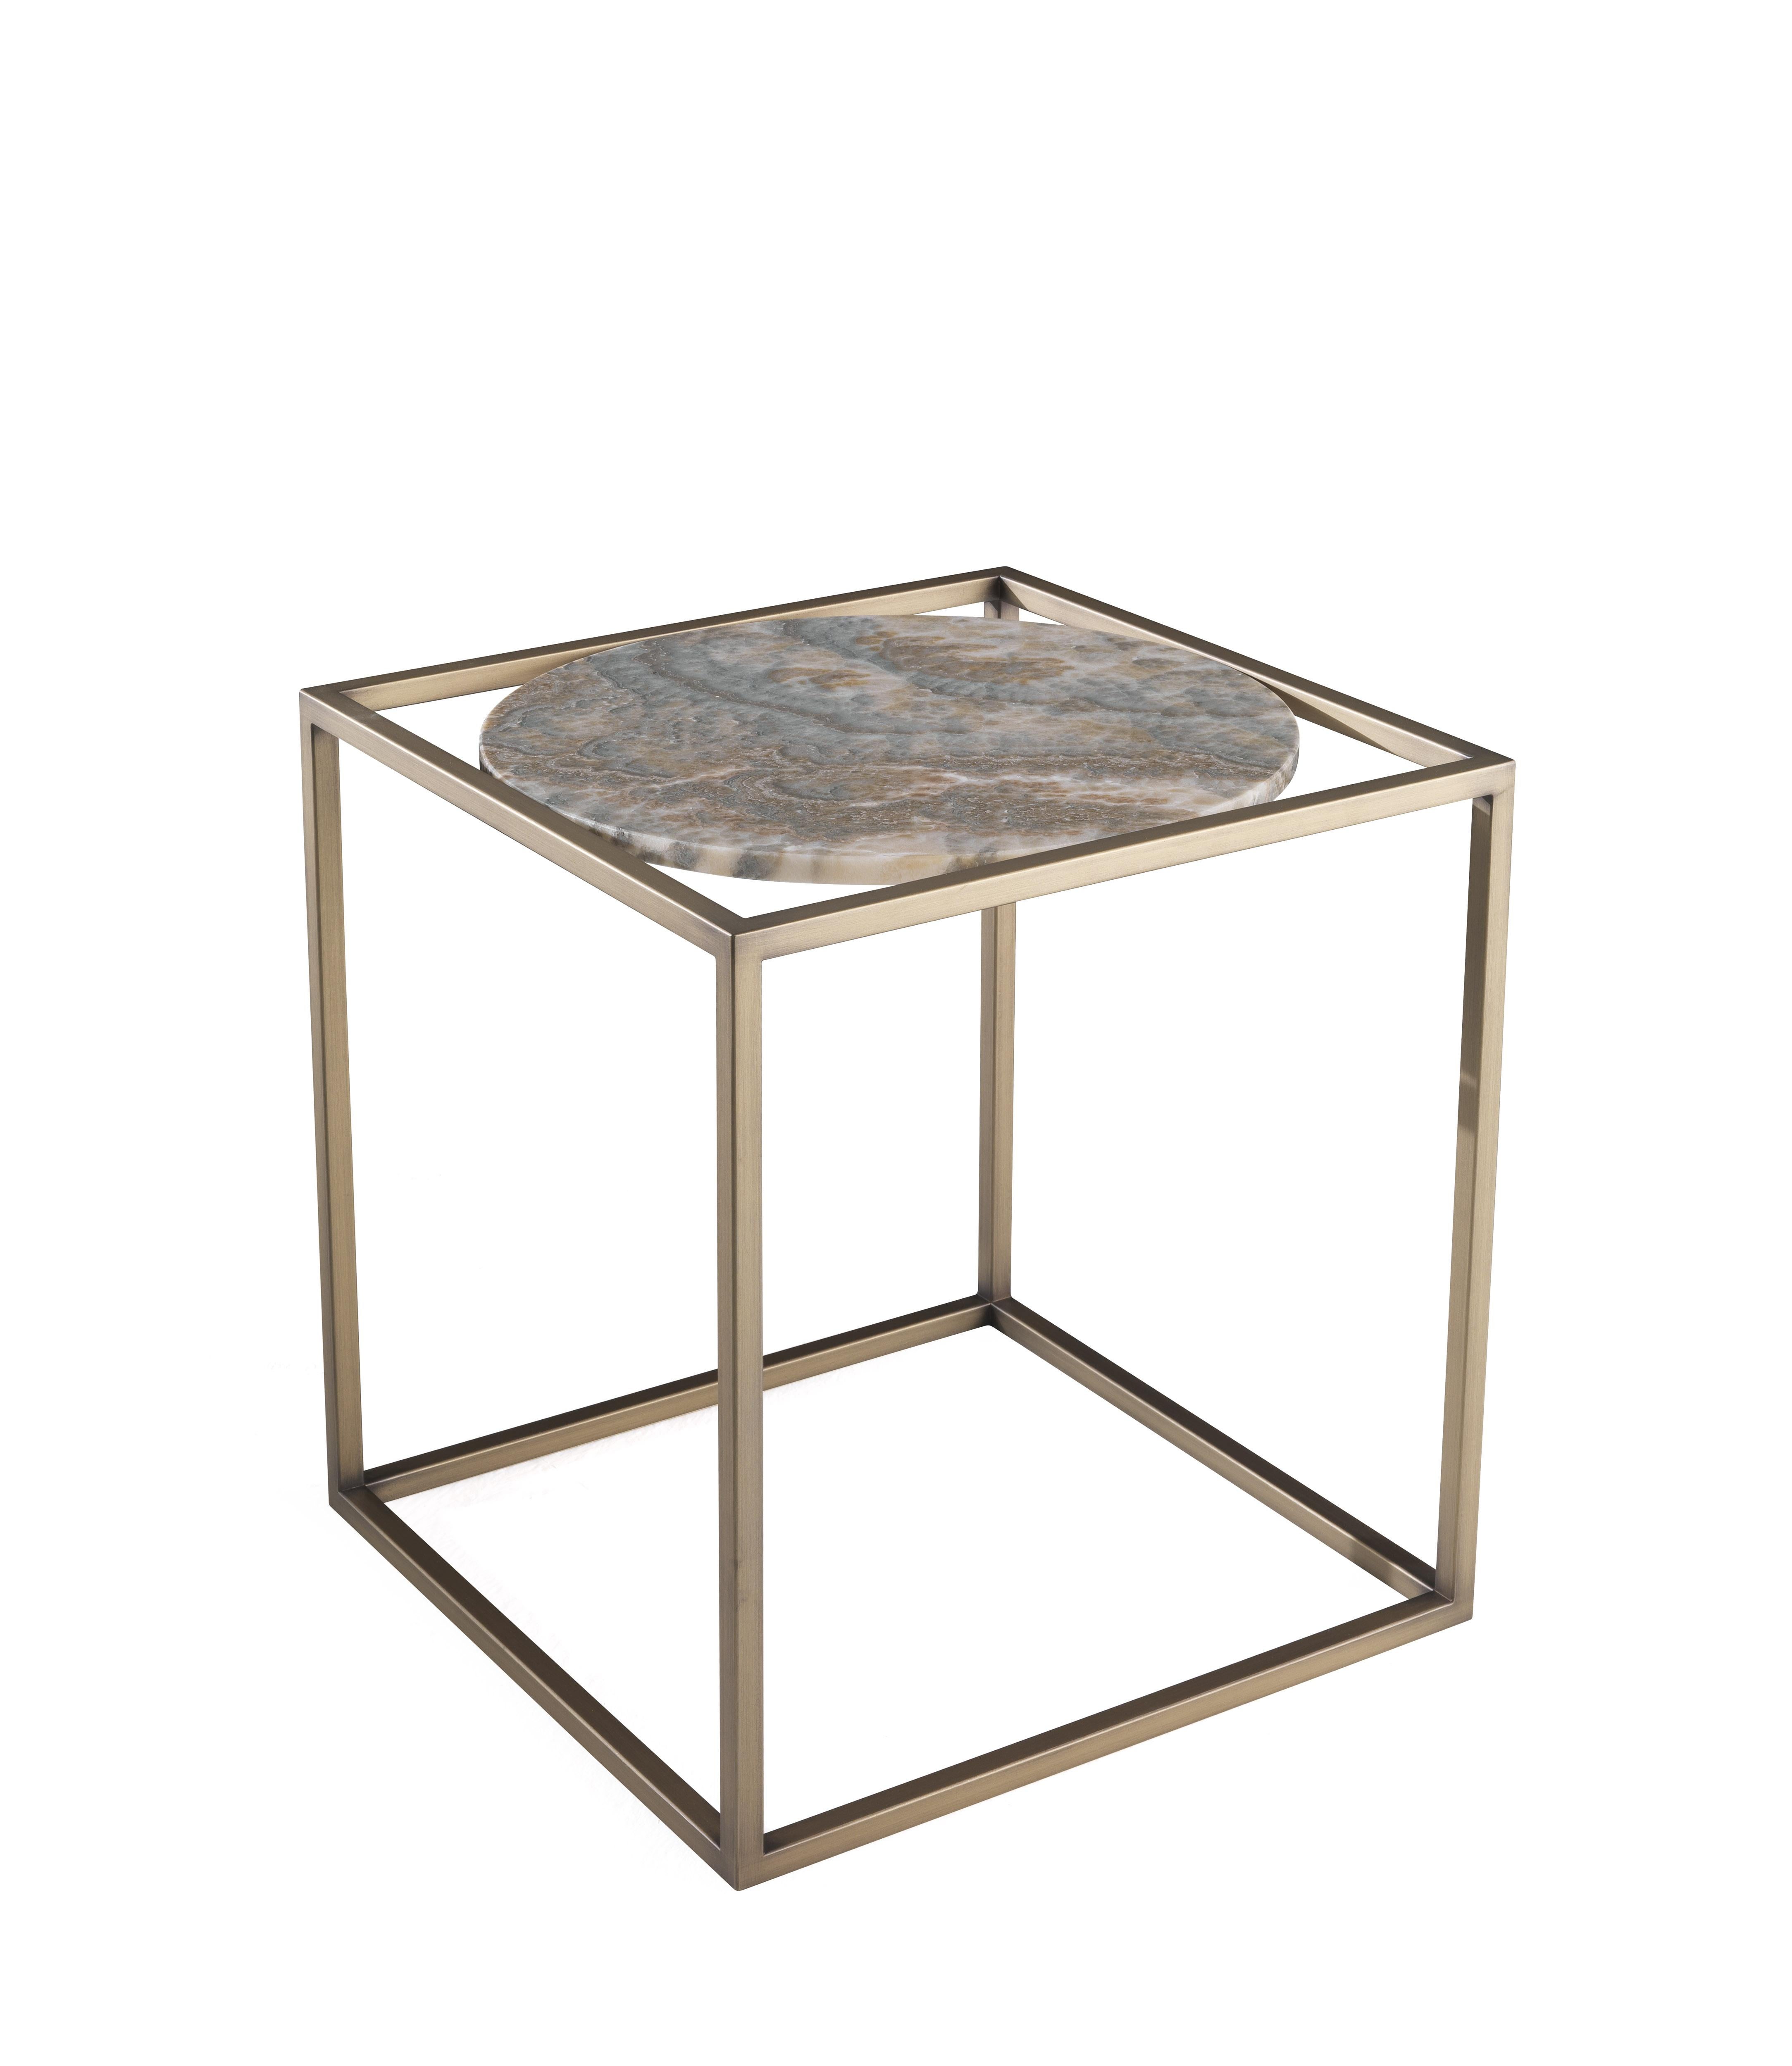 Eine Komposition aus geometrischen Formen und verschiedenen Materialien für einen Tisch, der den Vintage-Charme der rechteckigen Struktur mit bronziertem Finish mit dem edlen und zeitlosen Reiz der runden Platte aus grauem Onyx verbindet.

Der